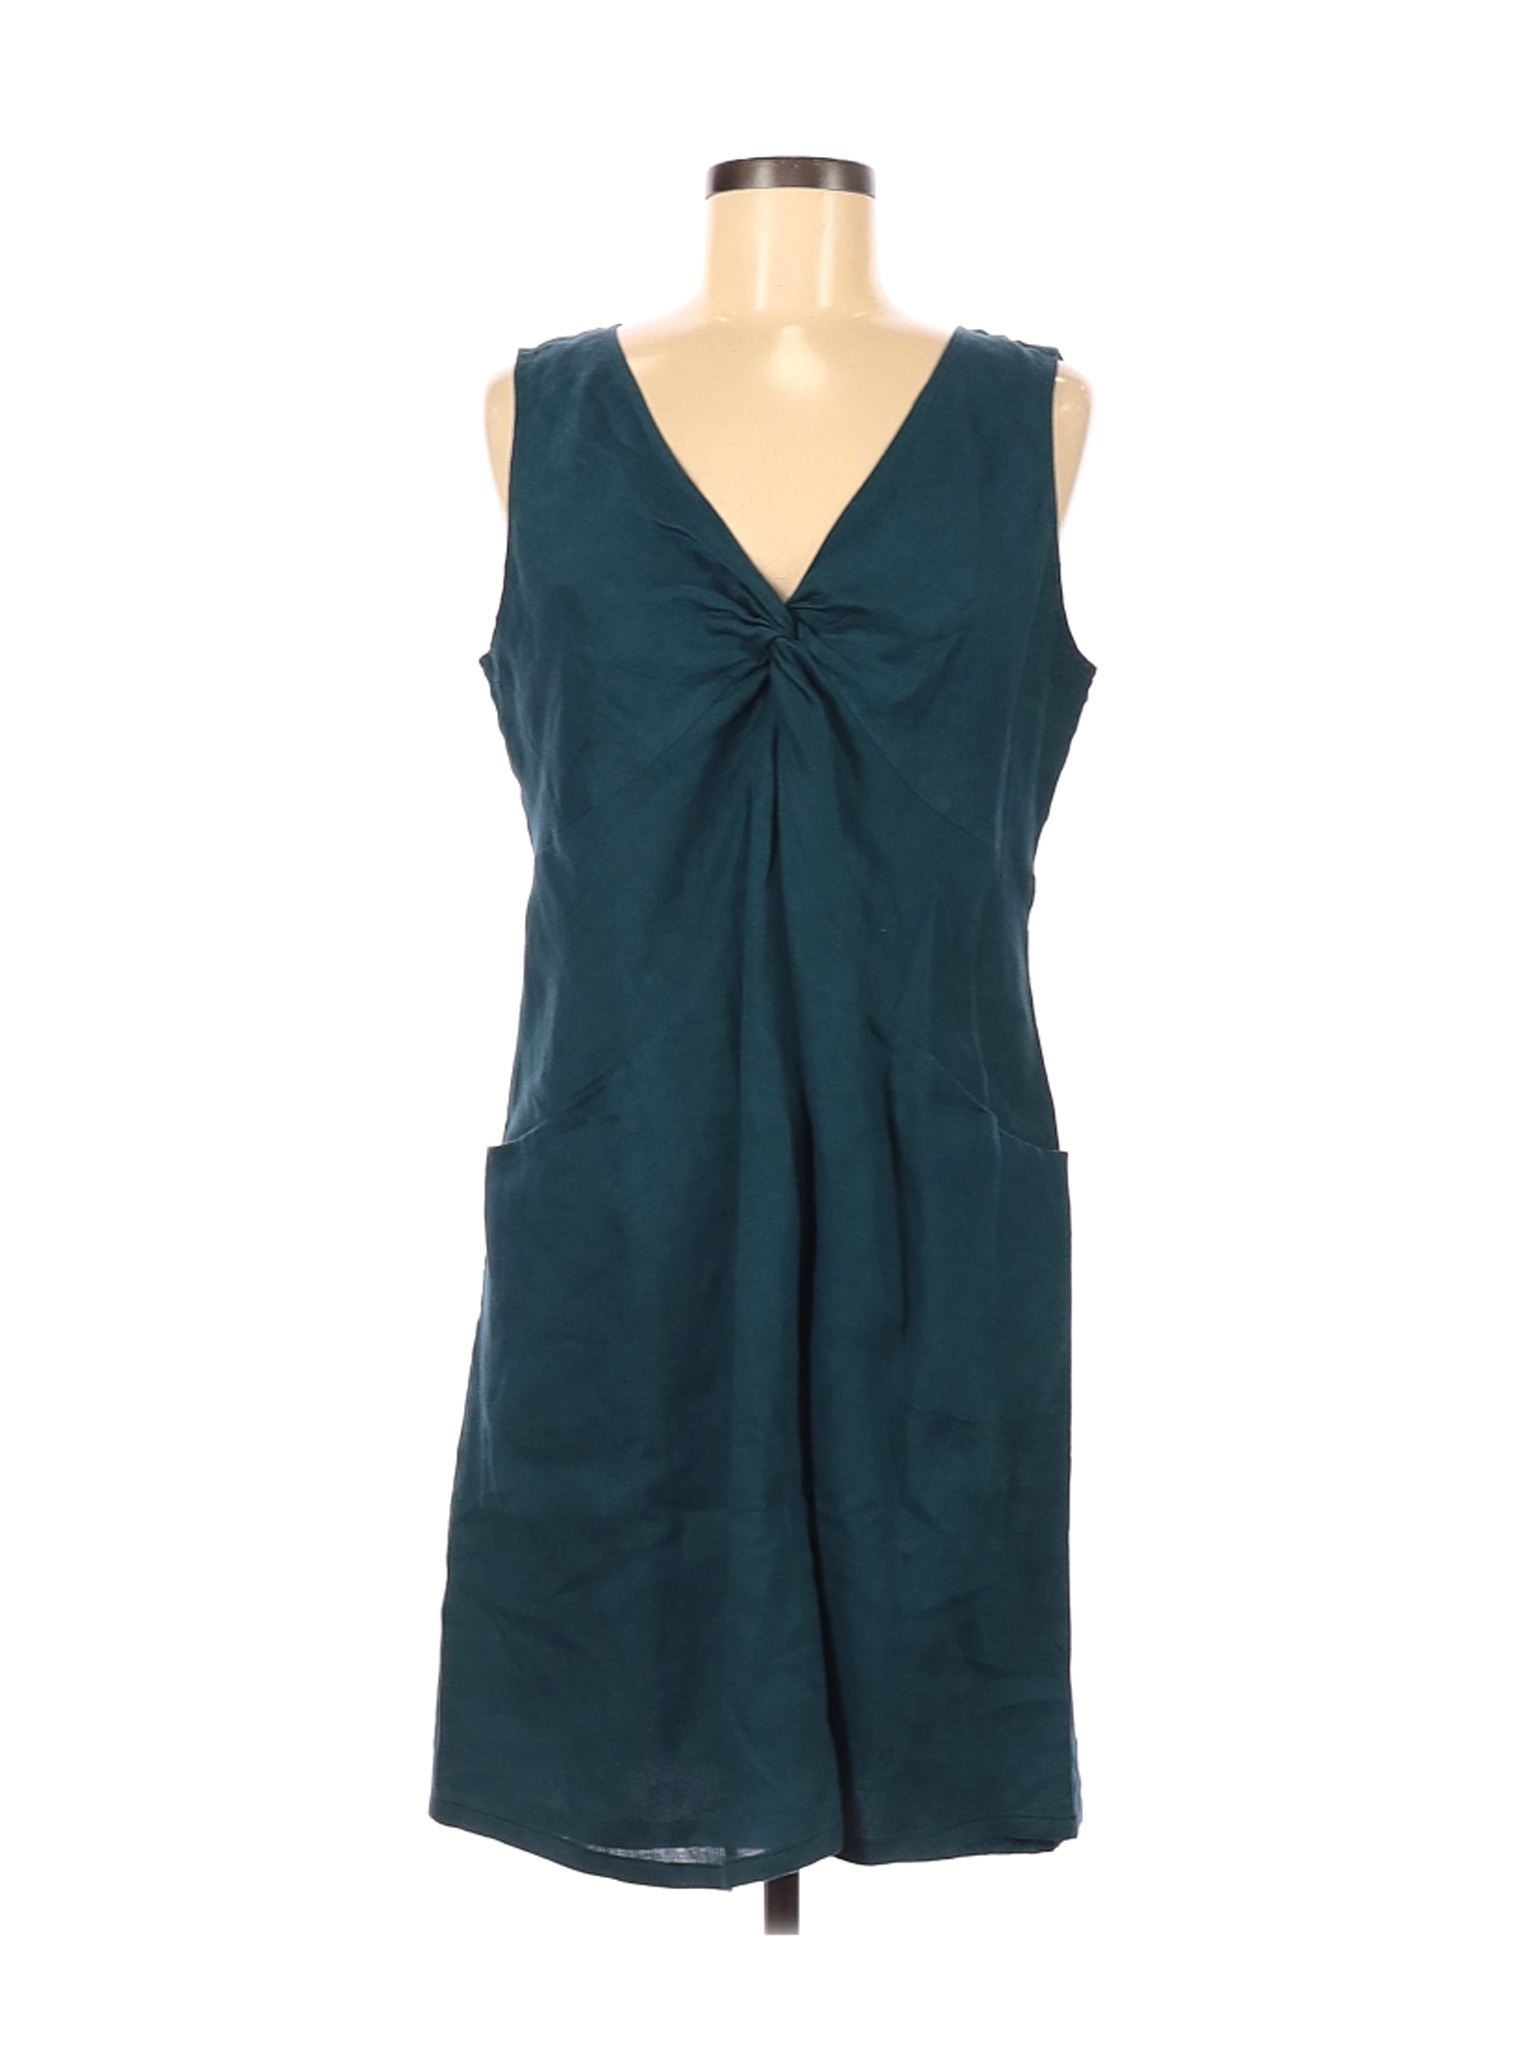 J.Jill Women Green Casual Dress 8 | eBay